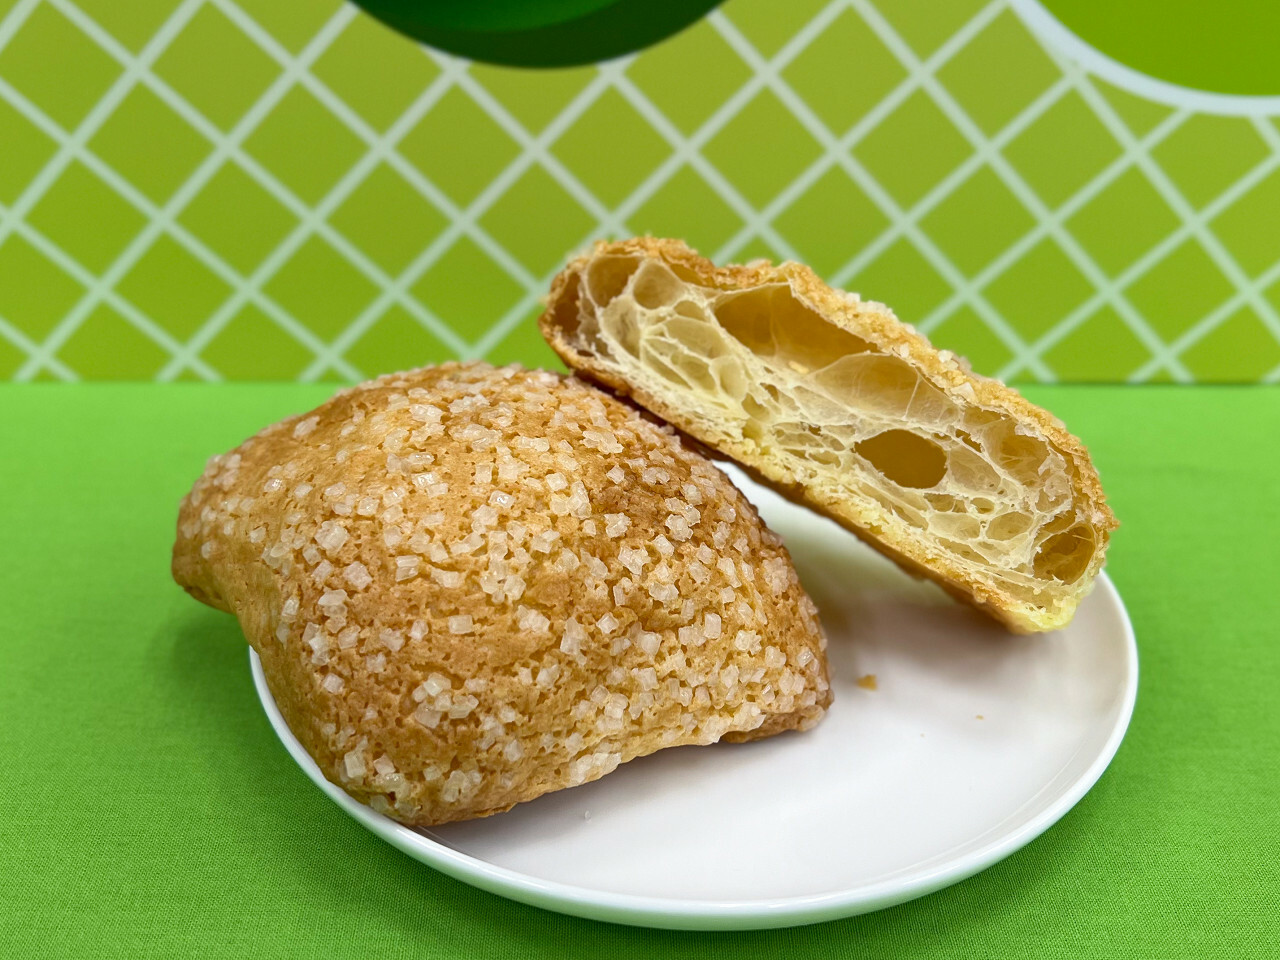 「バタークロワッサンメロンパン」145円　※沖縄県では仕様が異なる